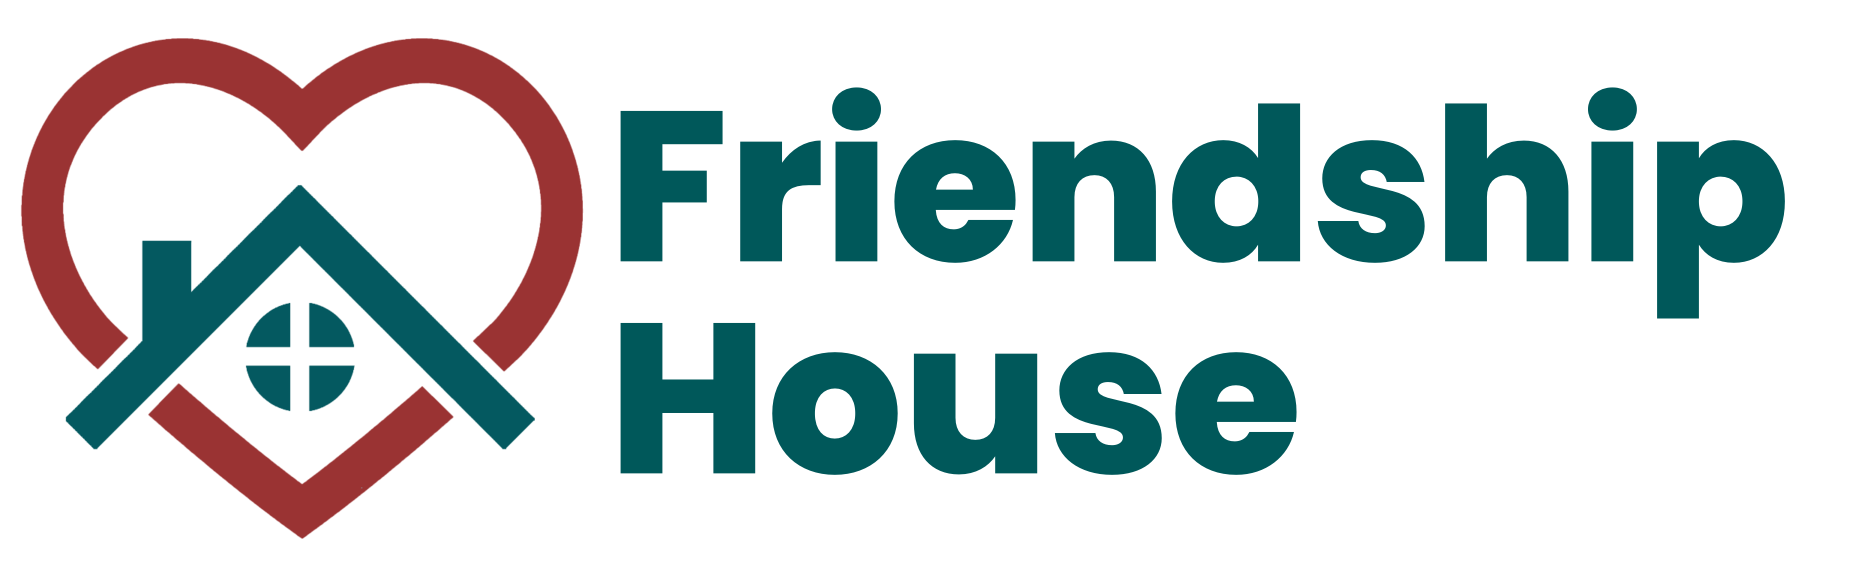 Friendship House Roanoke